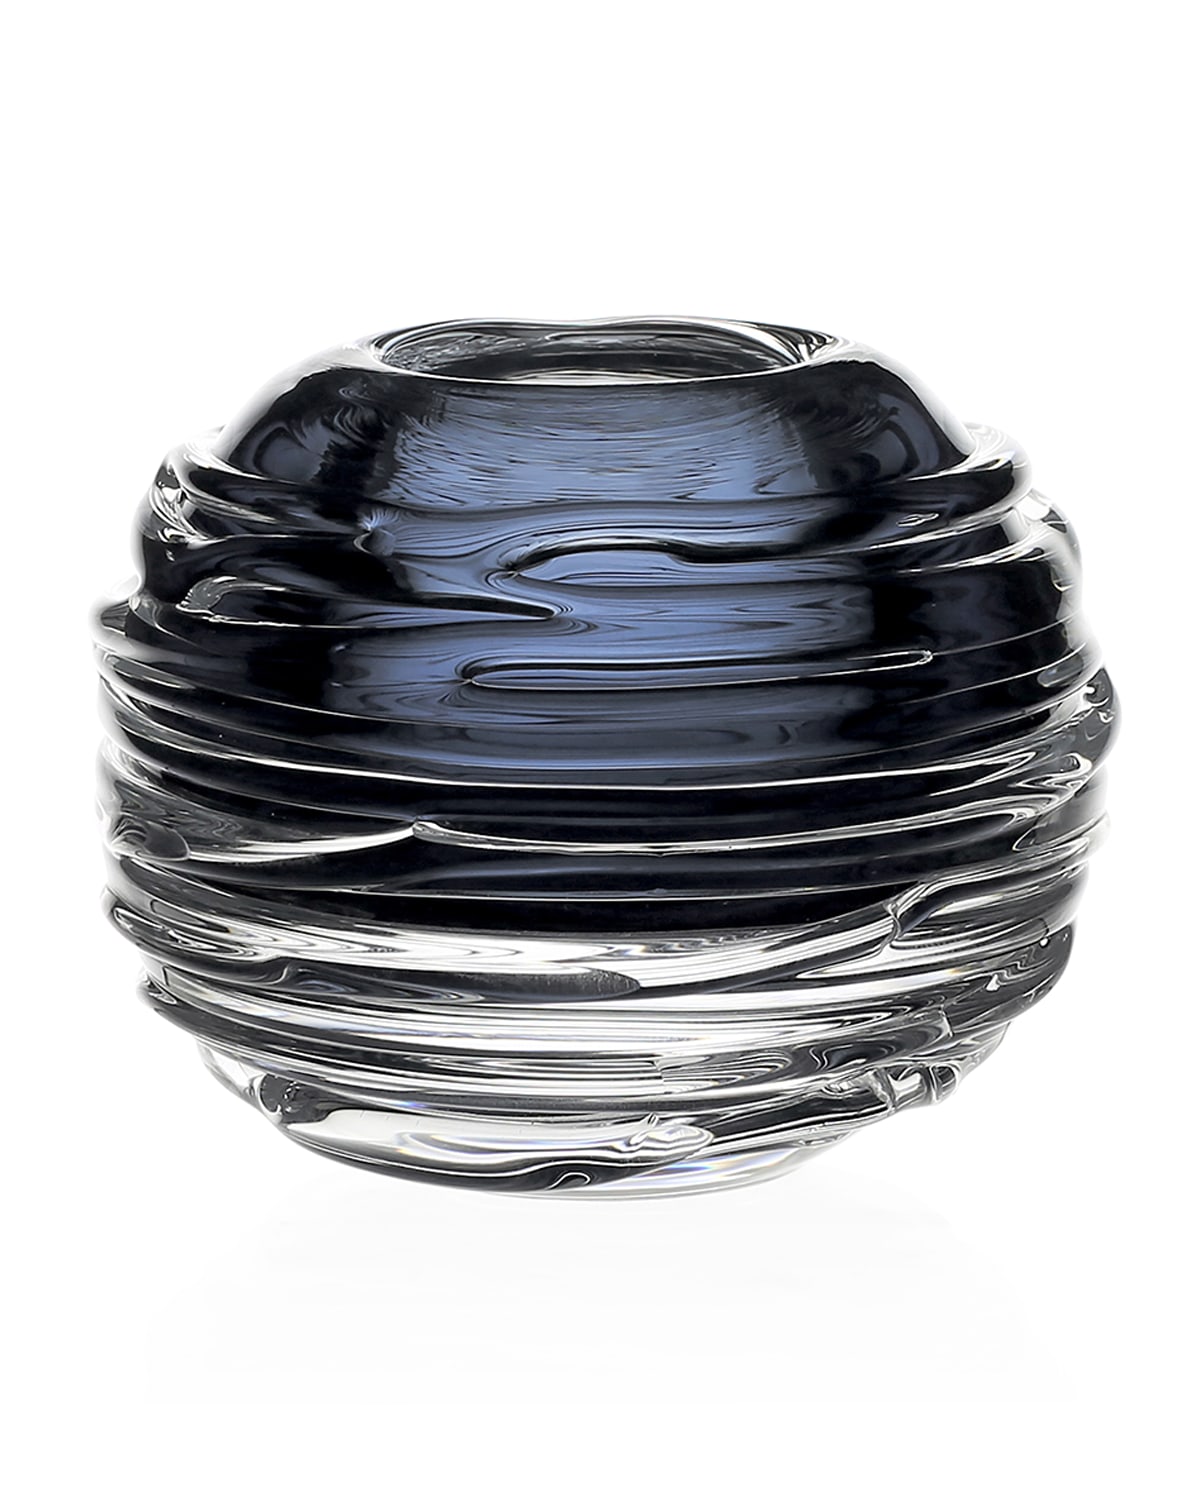 William Yeoward Miranda 3" Mini Globe Vase